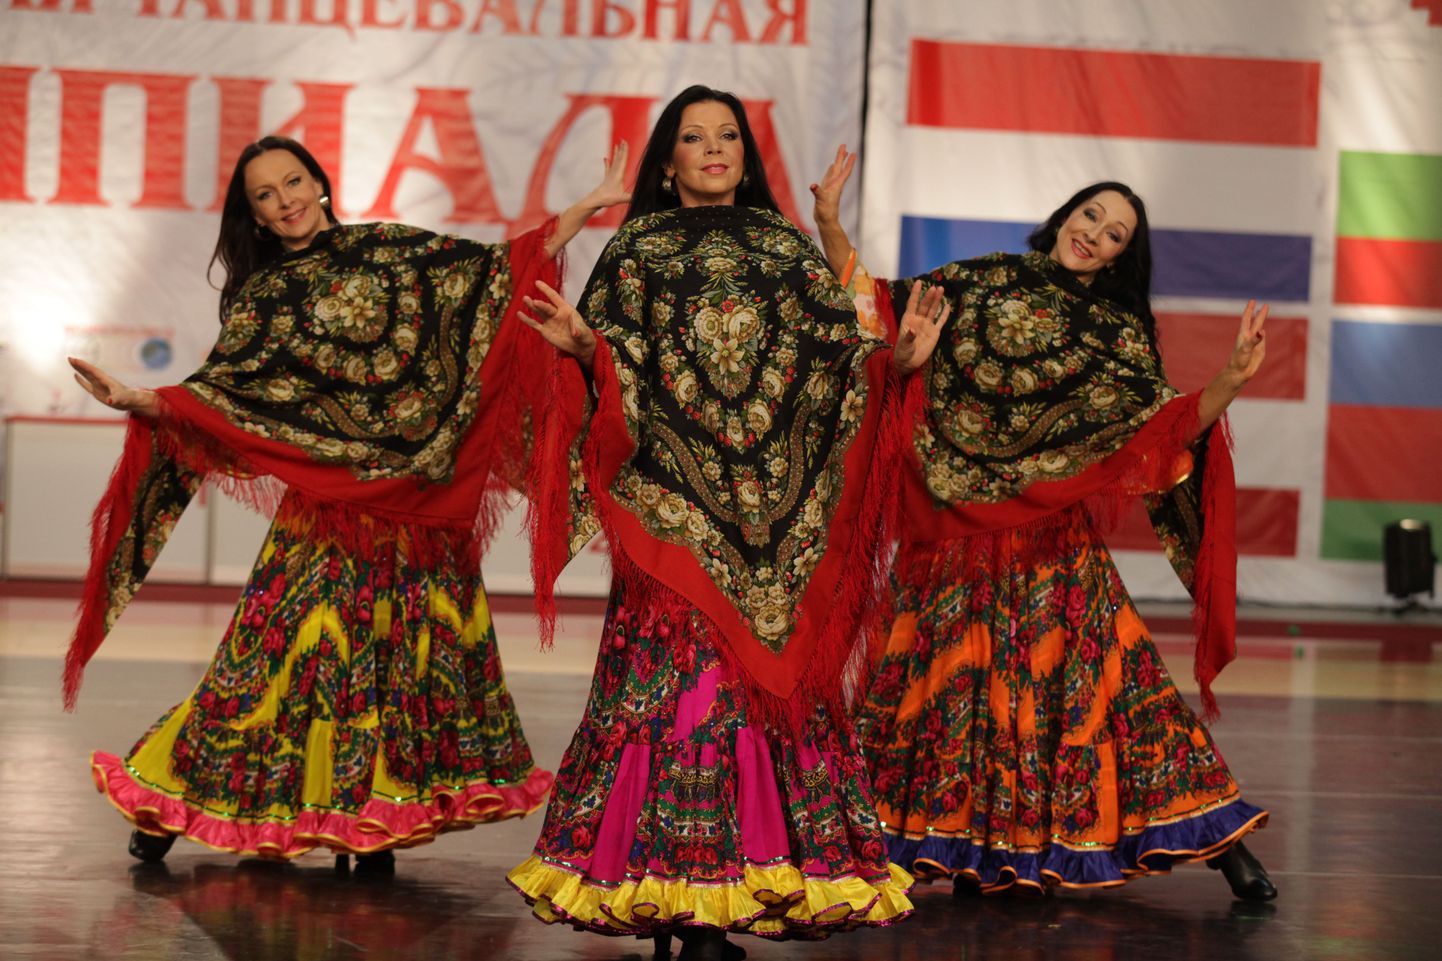 Ukrainast pärit Eesti mustlastantsijad võitsid 3 kuldmedalit Moskvas toimunud mustlastantsu konkurssil